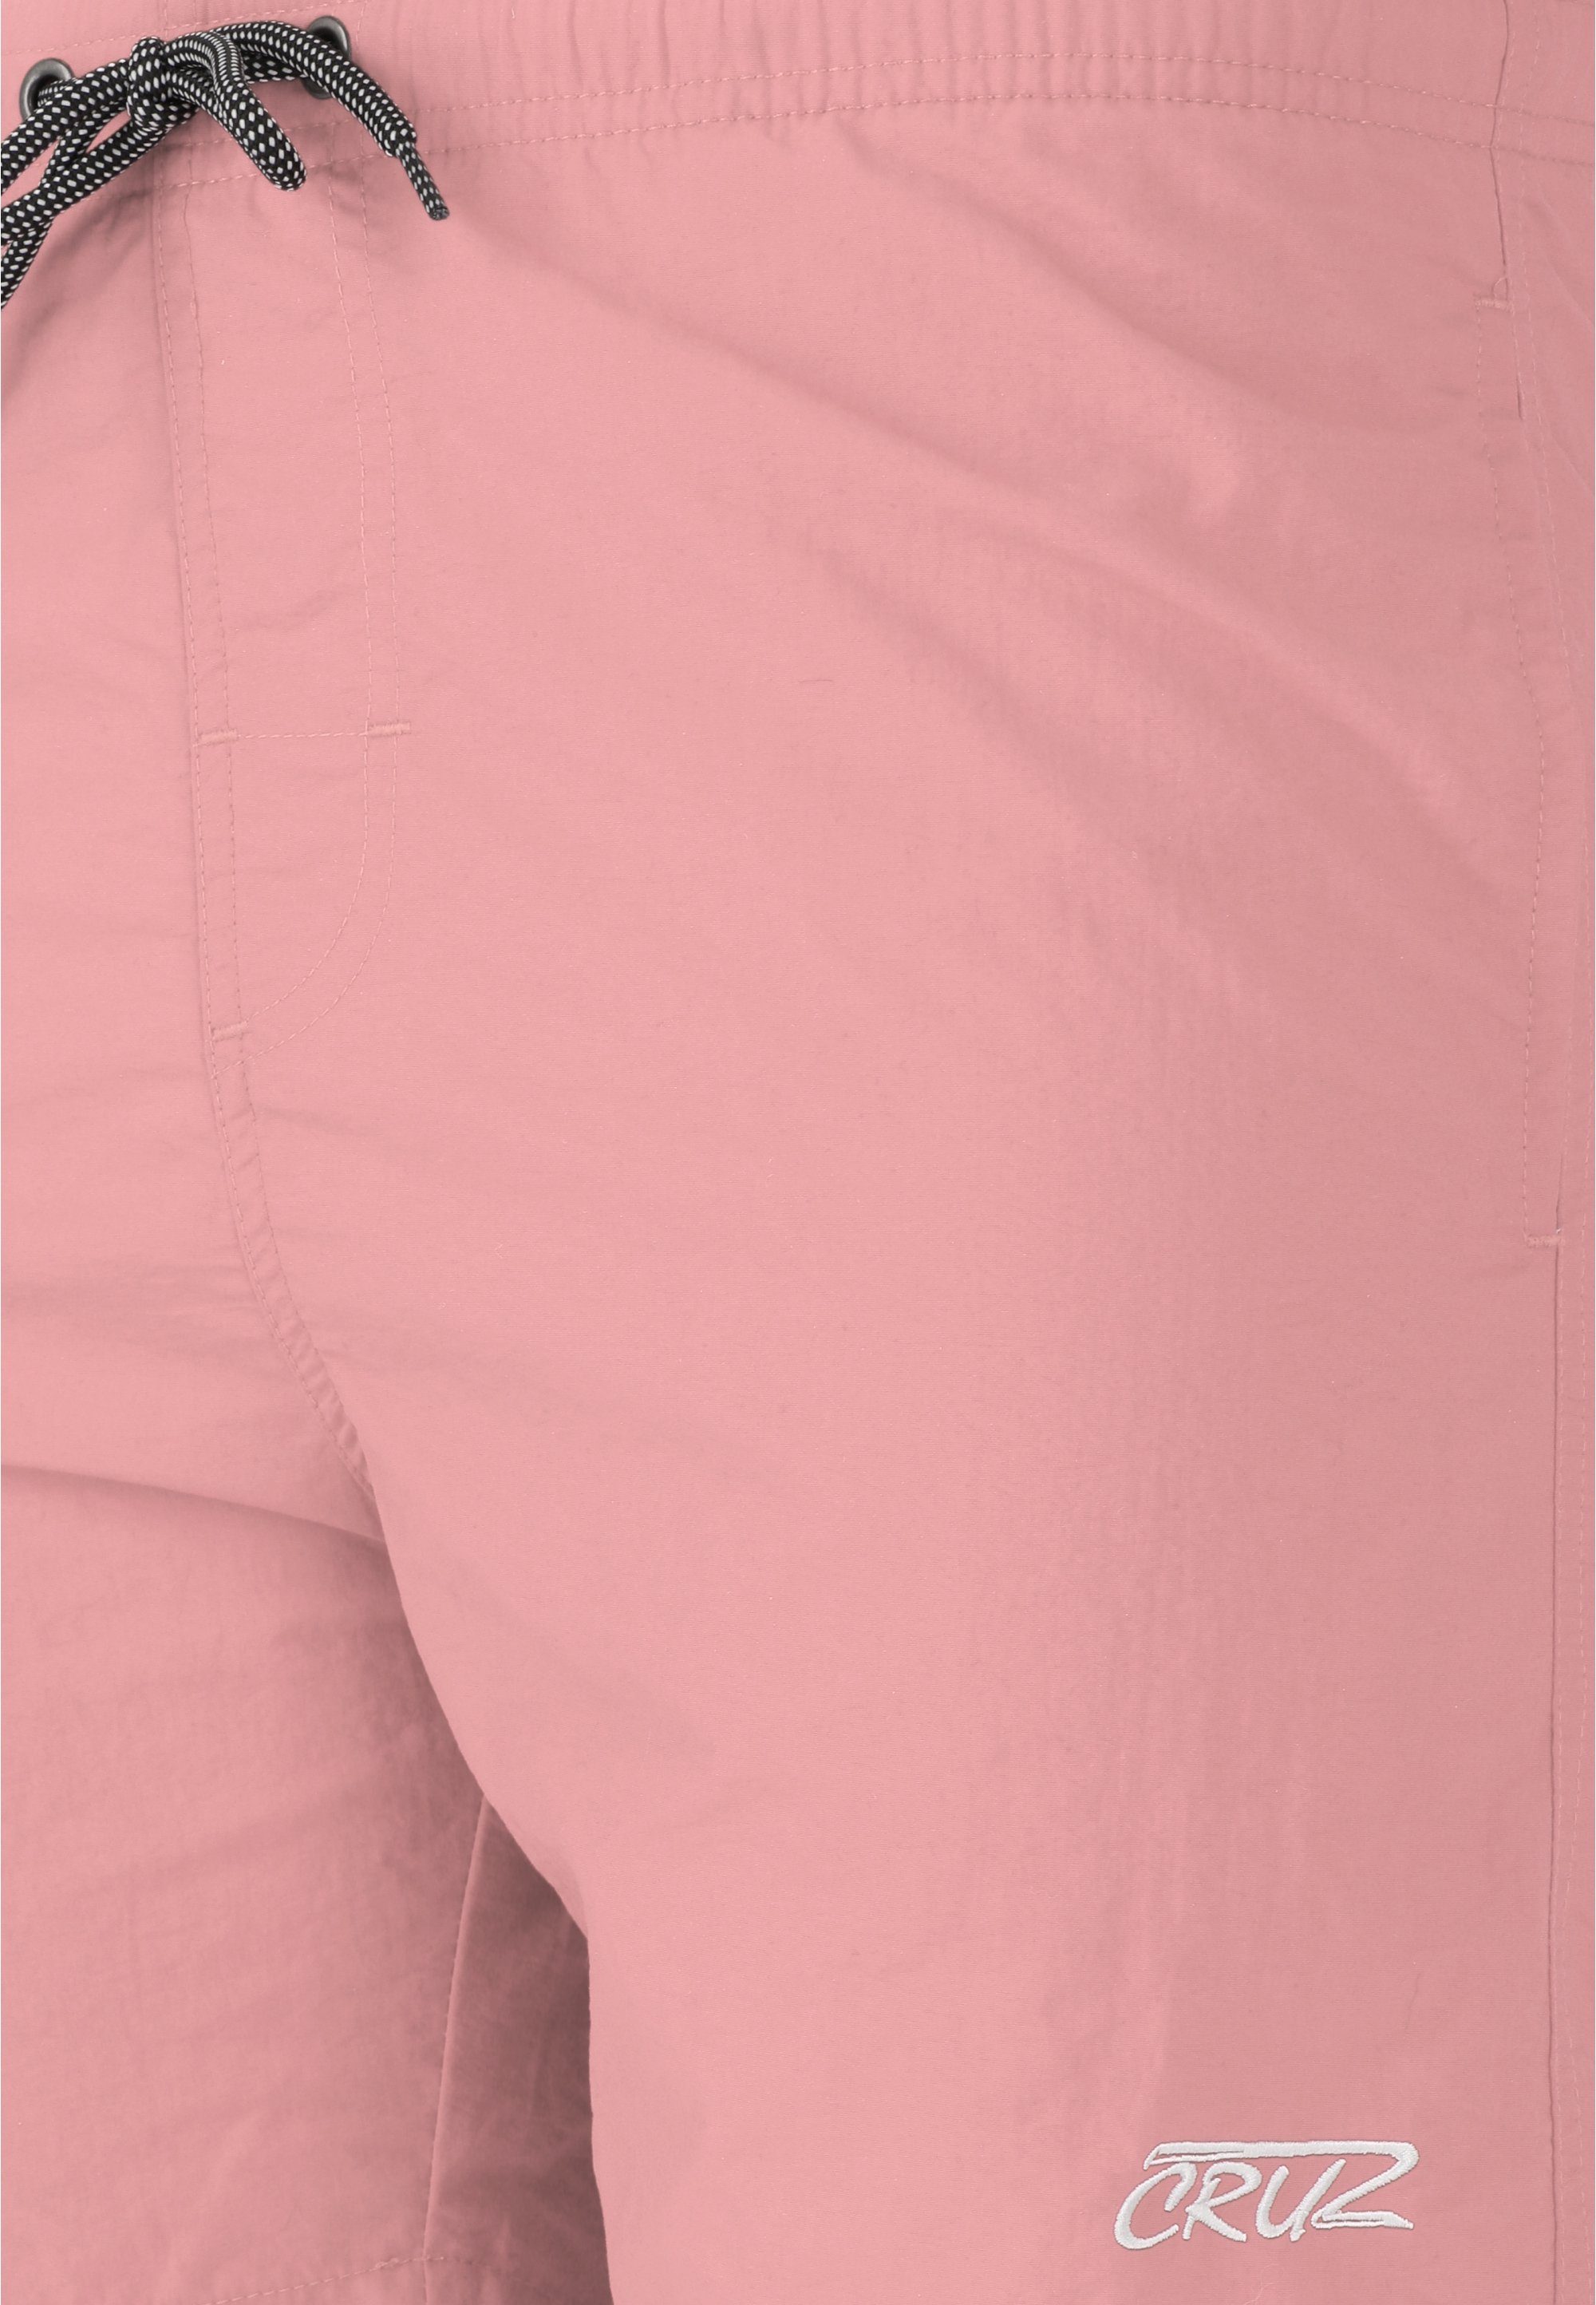 CRUZ Badehose Design klassischem in Clemont rosa